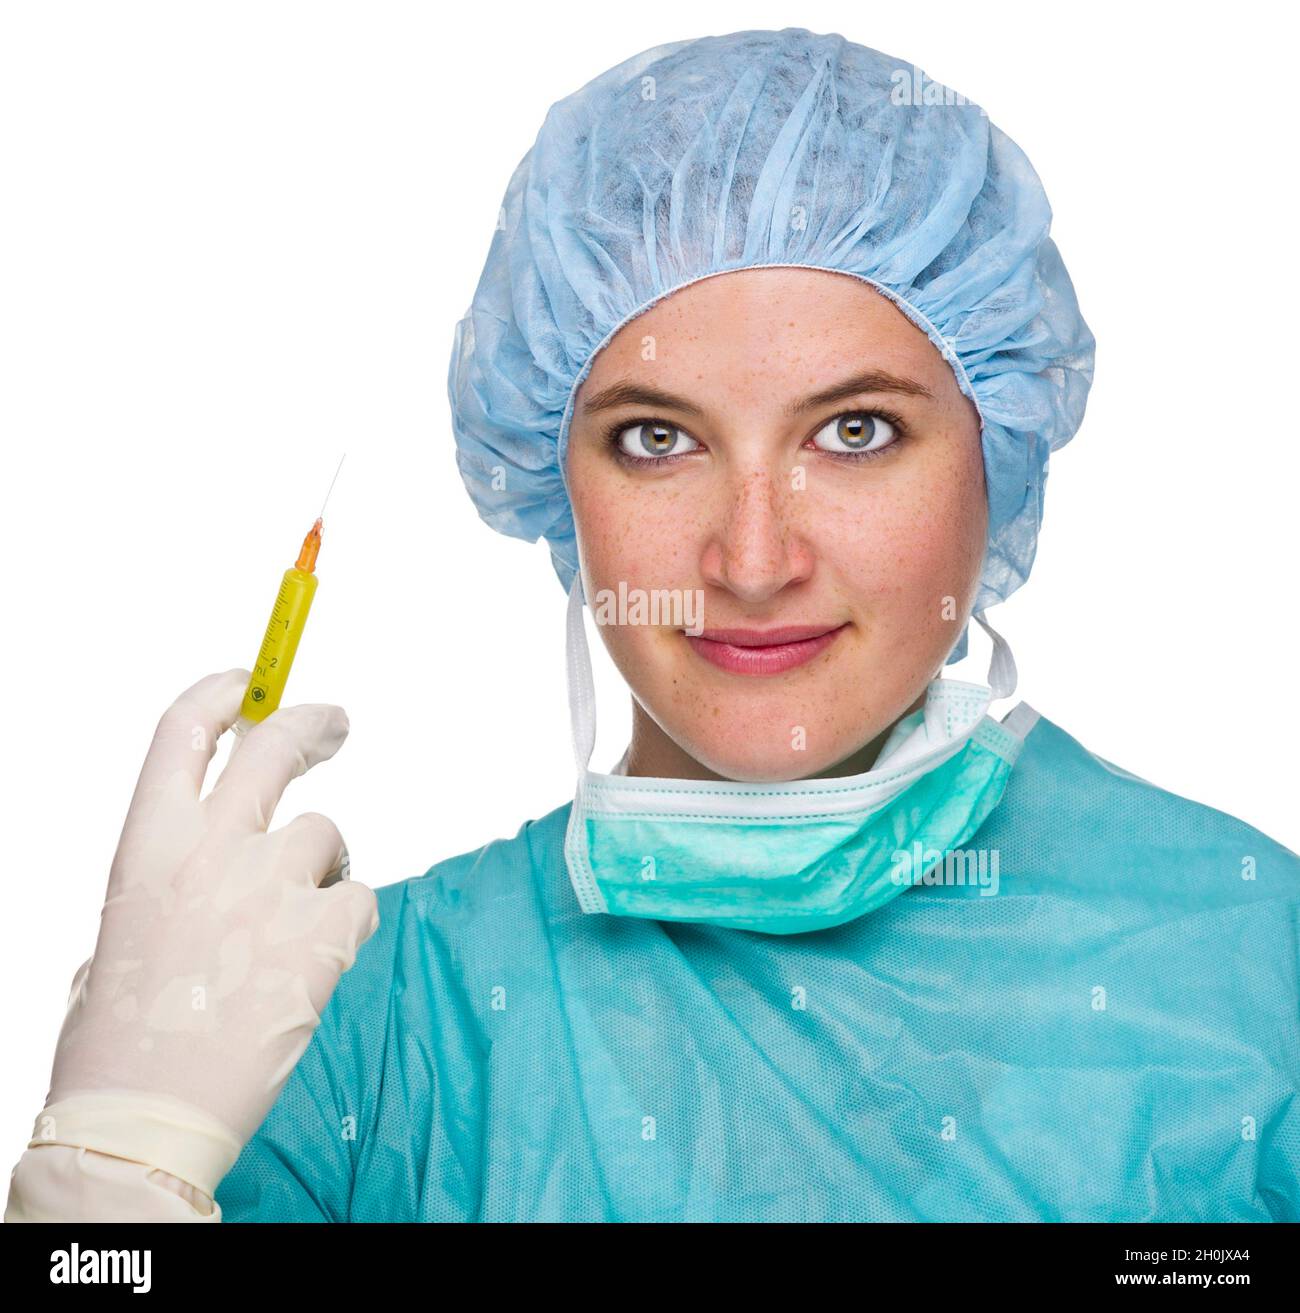 Chirurgische Krankenschwester mit einer Spritze Stockfoto